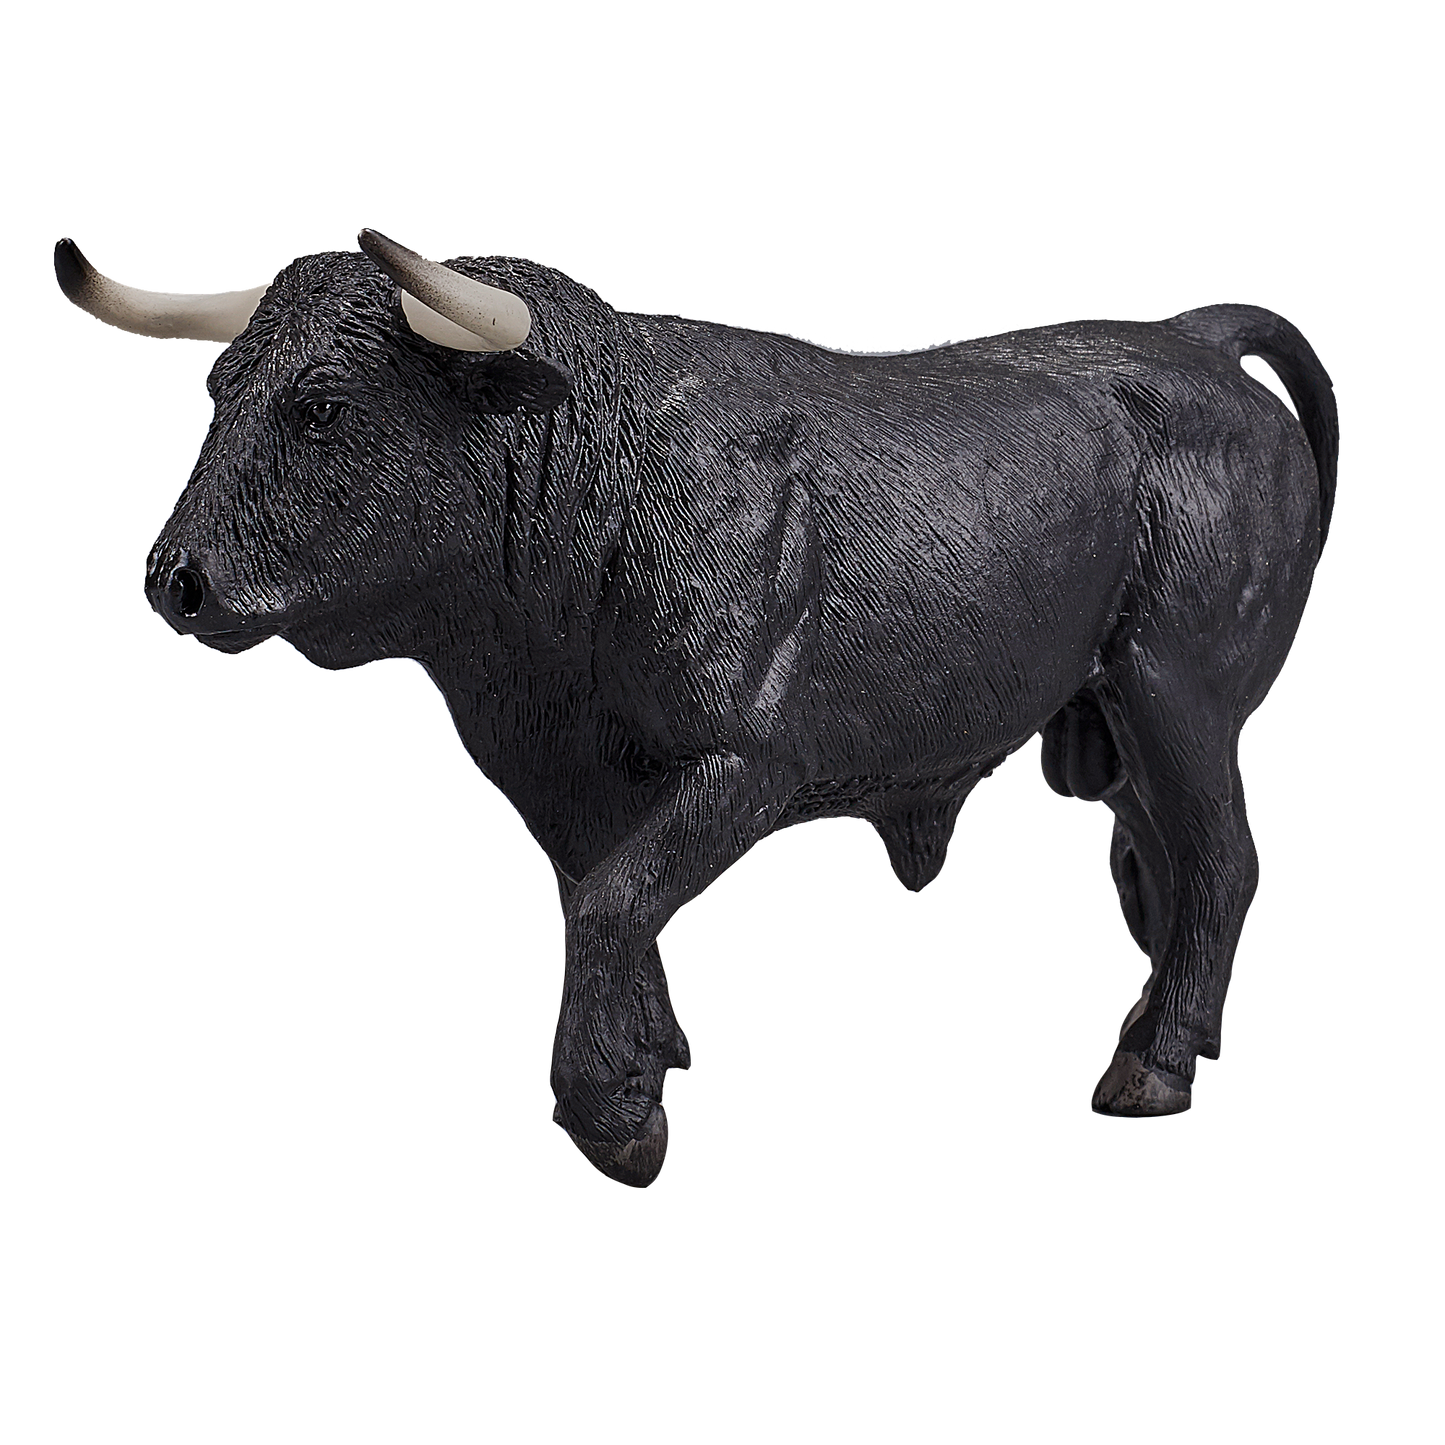 Mojo Spanish Bull